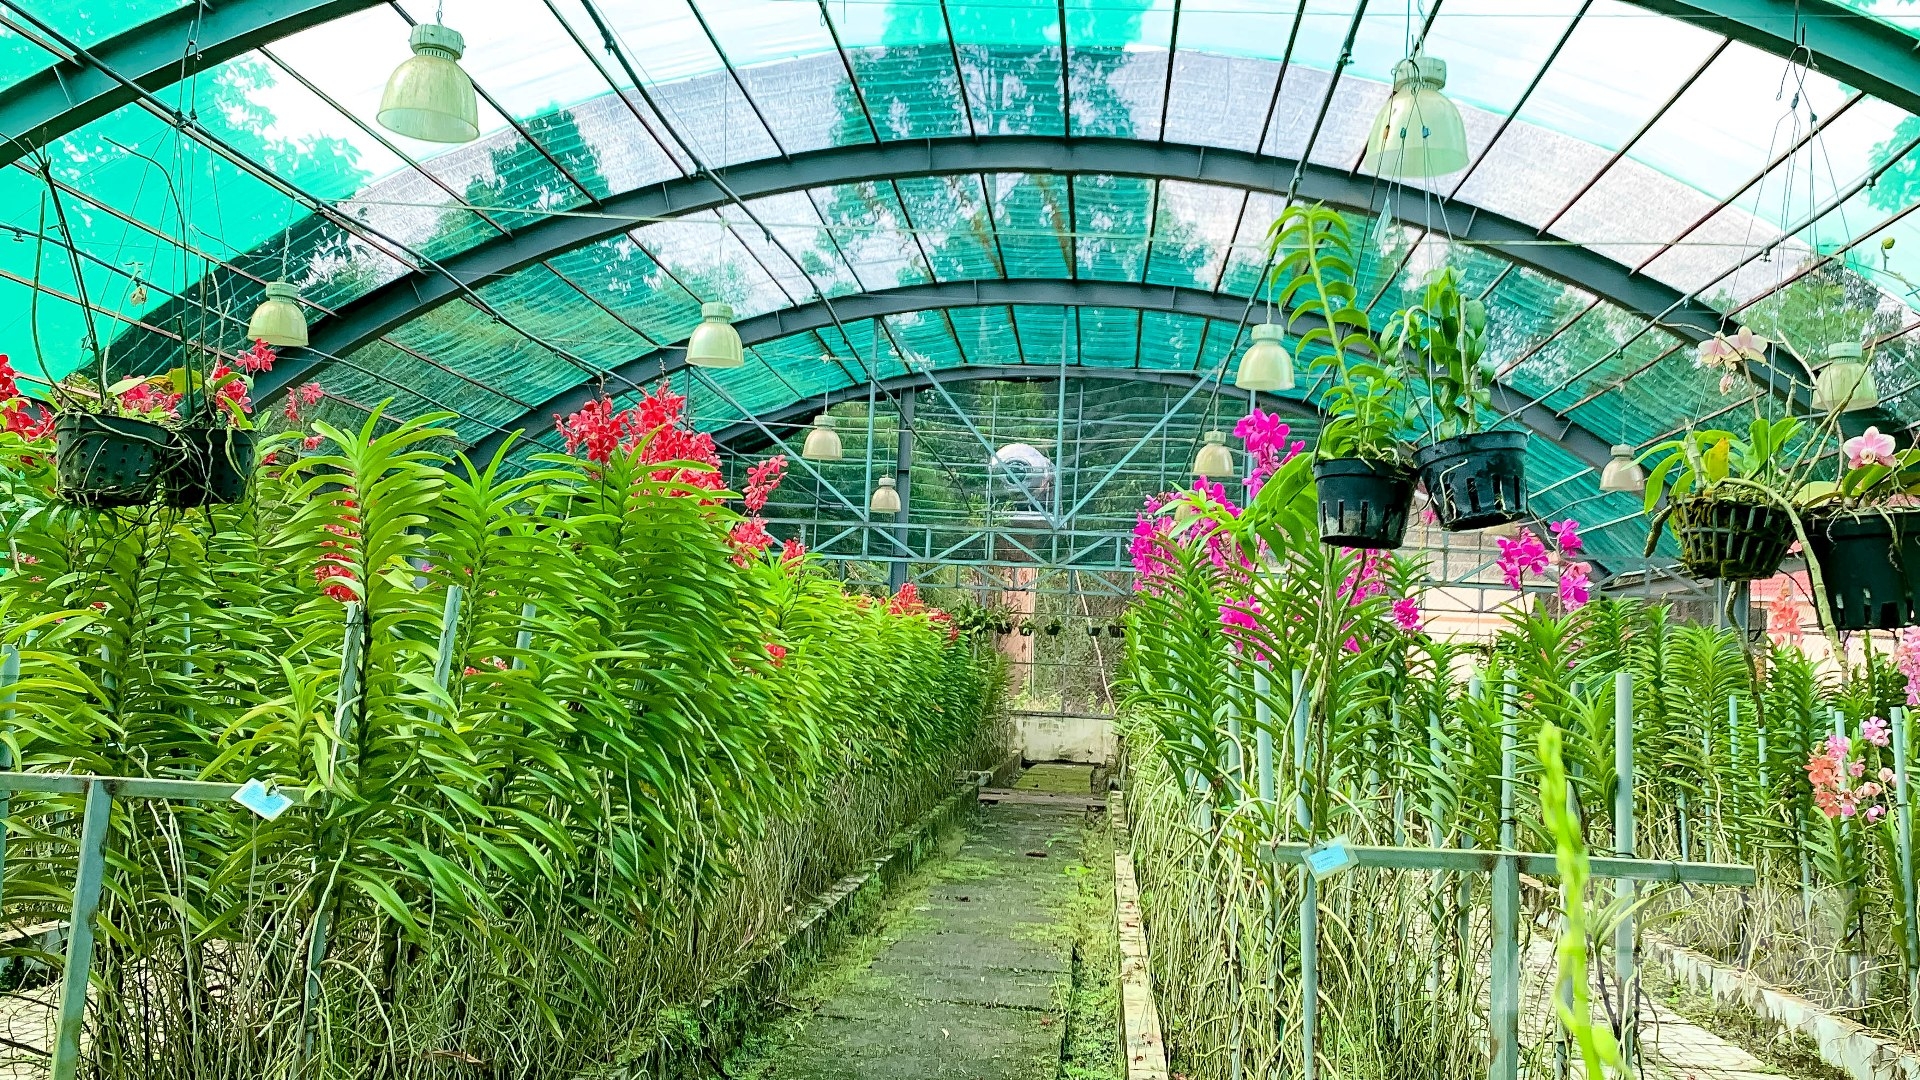 Nhiều nhà vườn lan tại Tây Ninh đang đầu tư bài bản, xác định đây là cây trồng có hướng lâu dài, bền vững và cho thu nhập cao. Ảnh: Lê Bình.